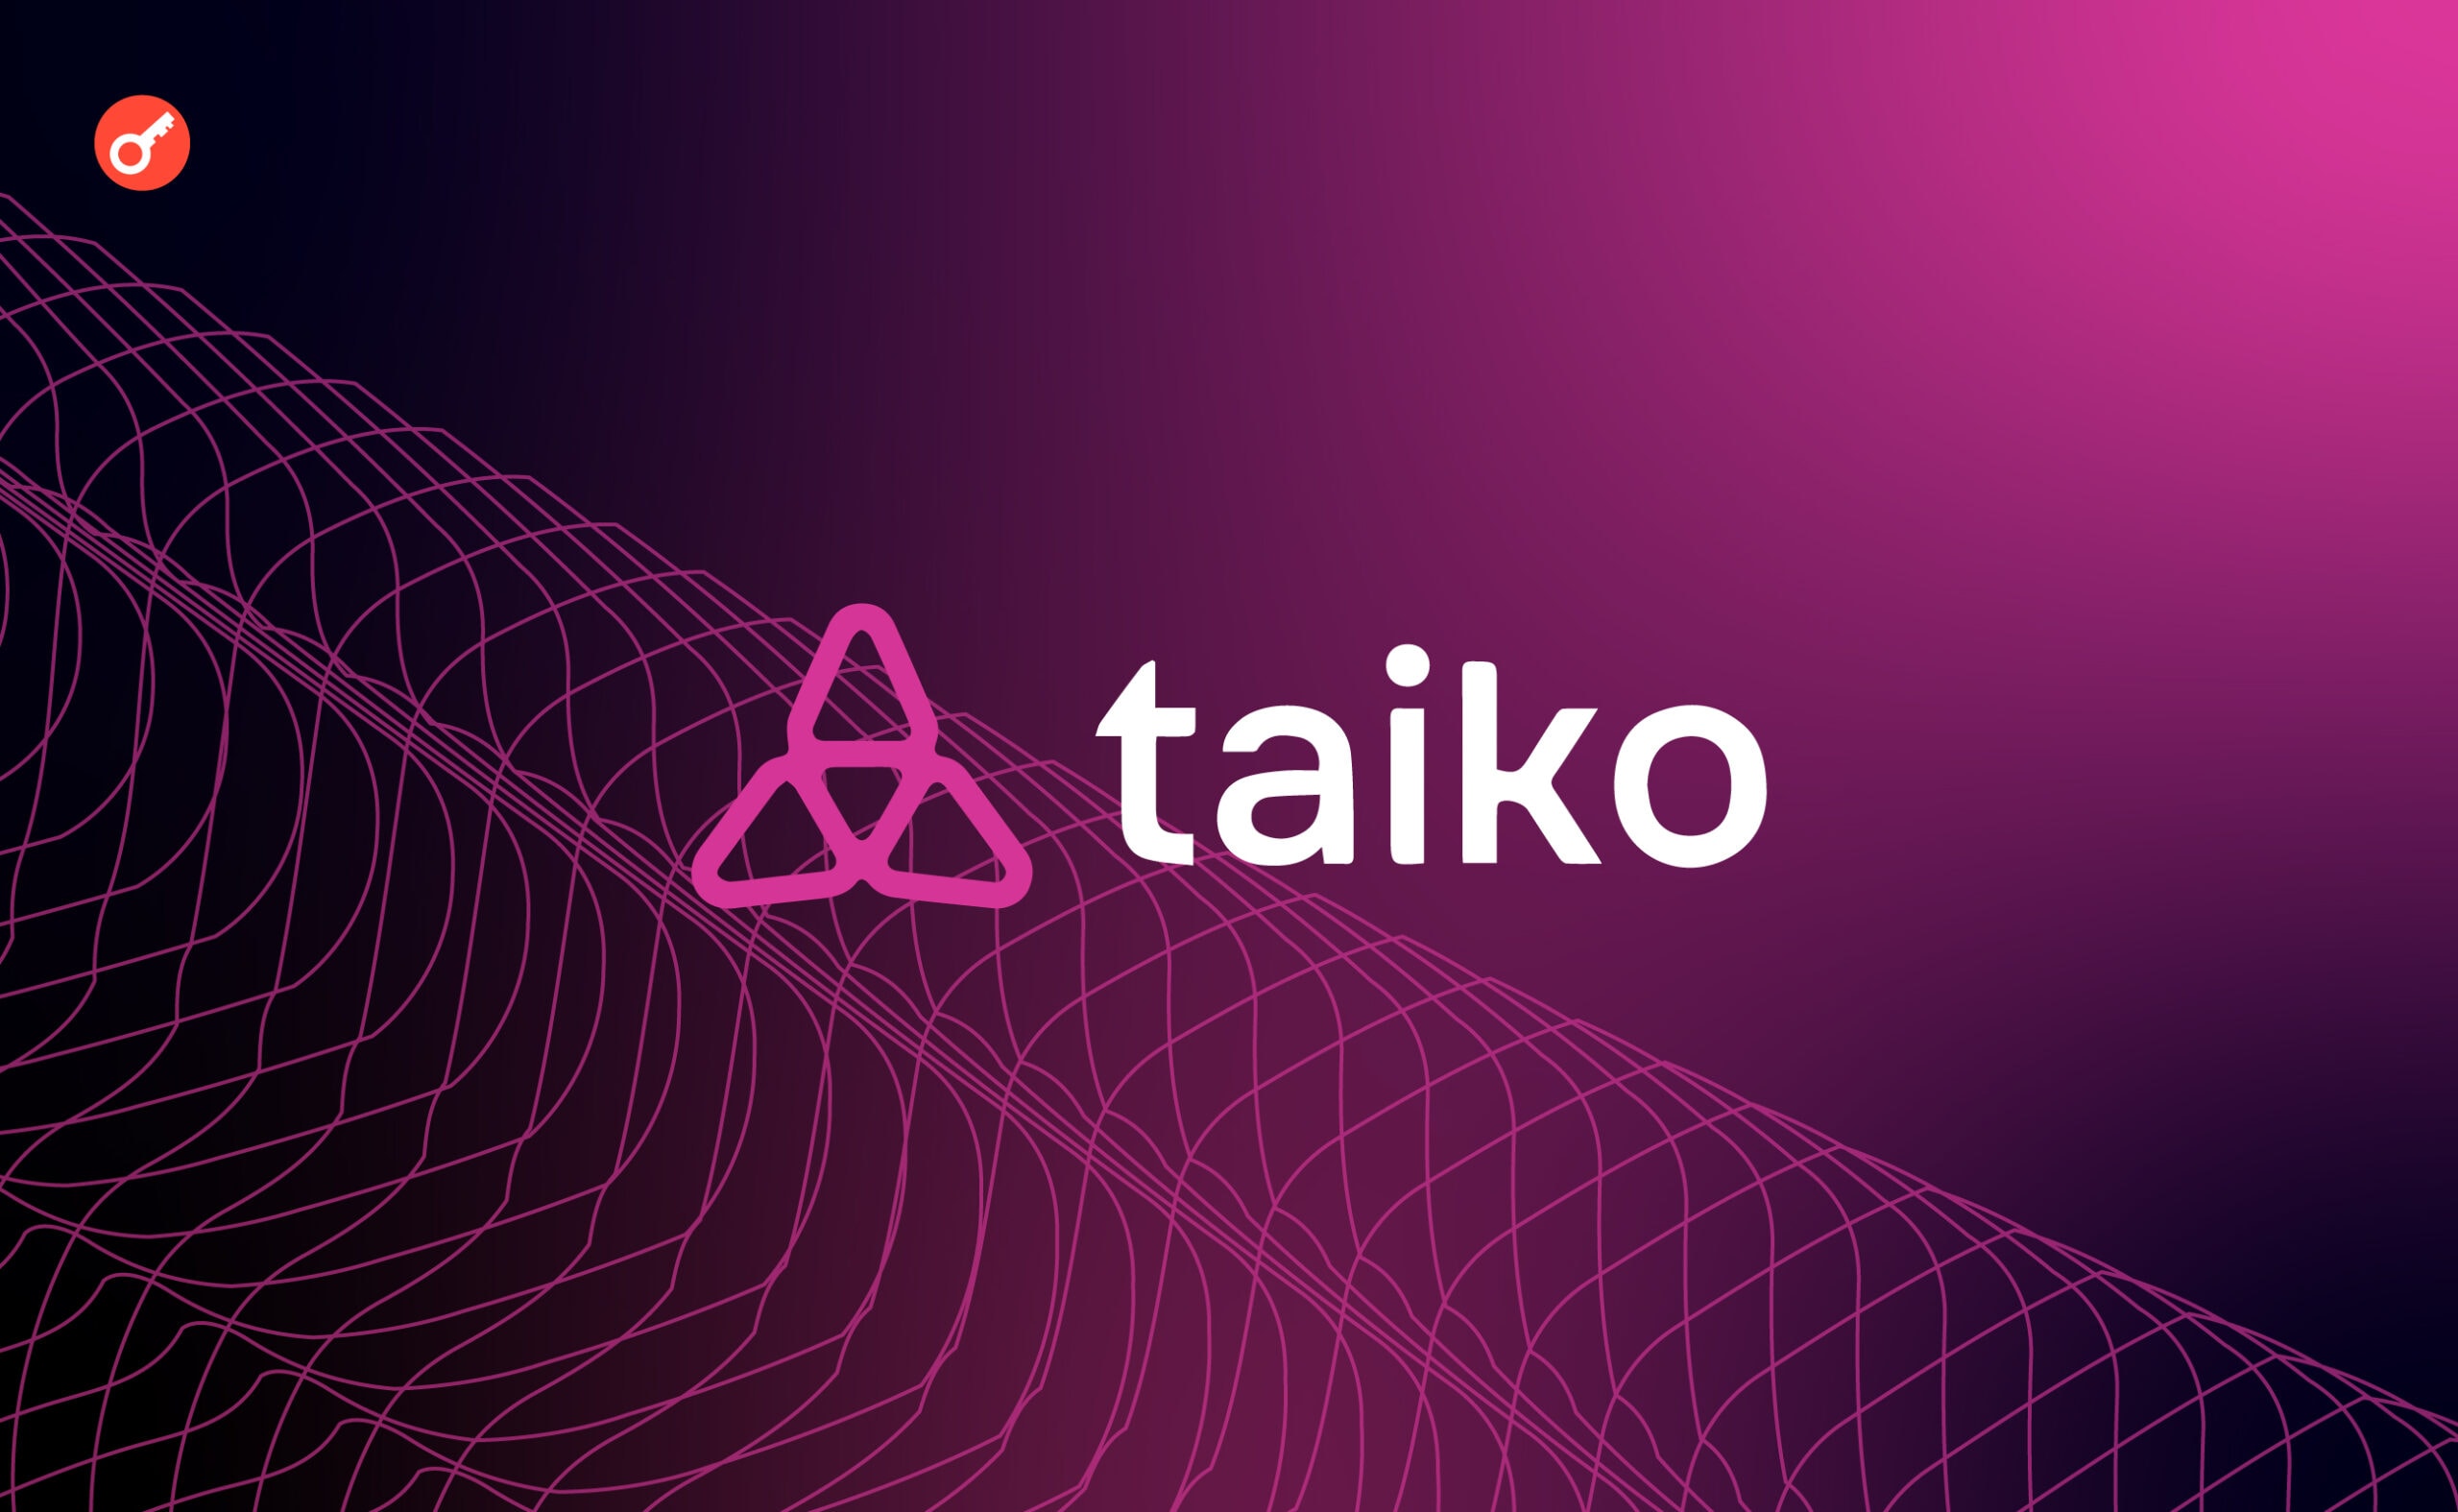 L2-протокол Taiko оголосив про запуск в мейннеті Ethereum. Головний колаж новини.